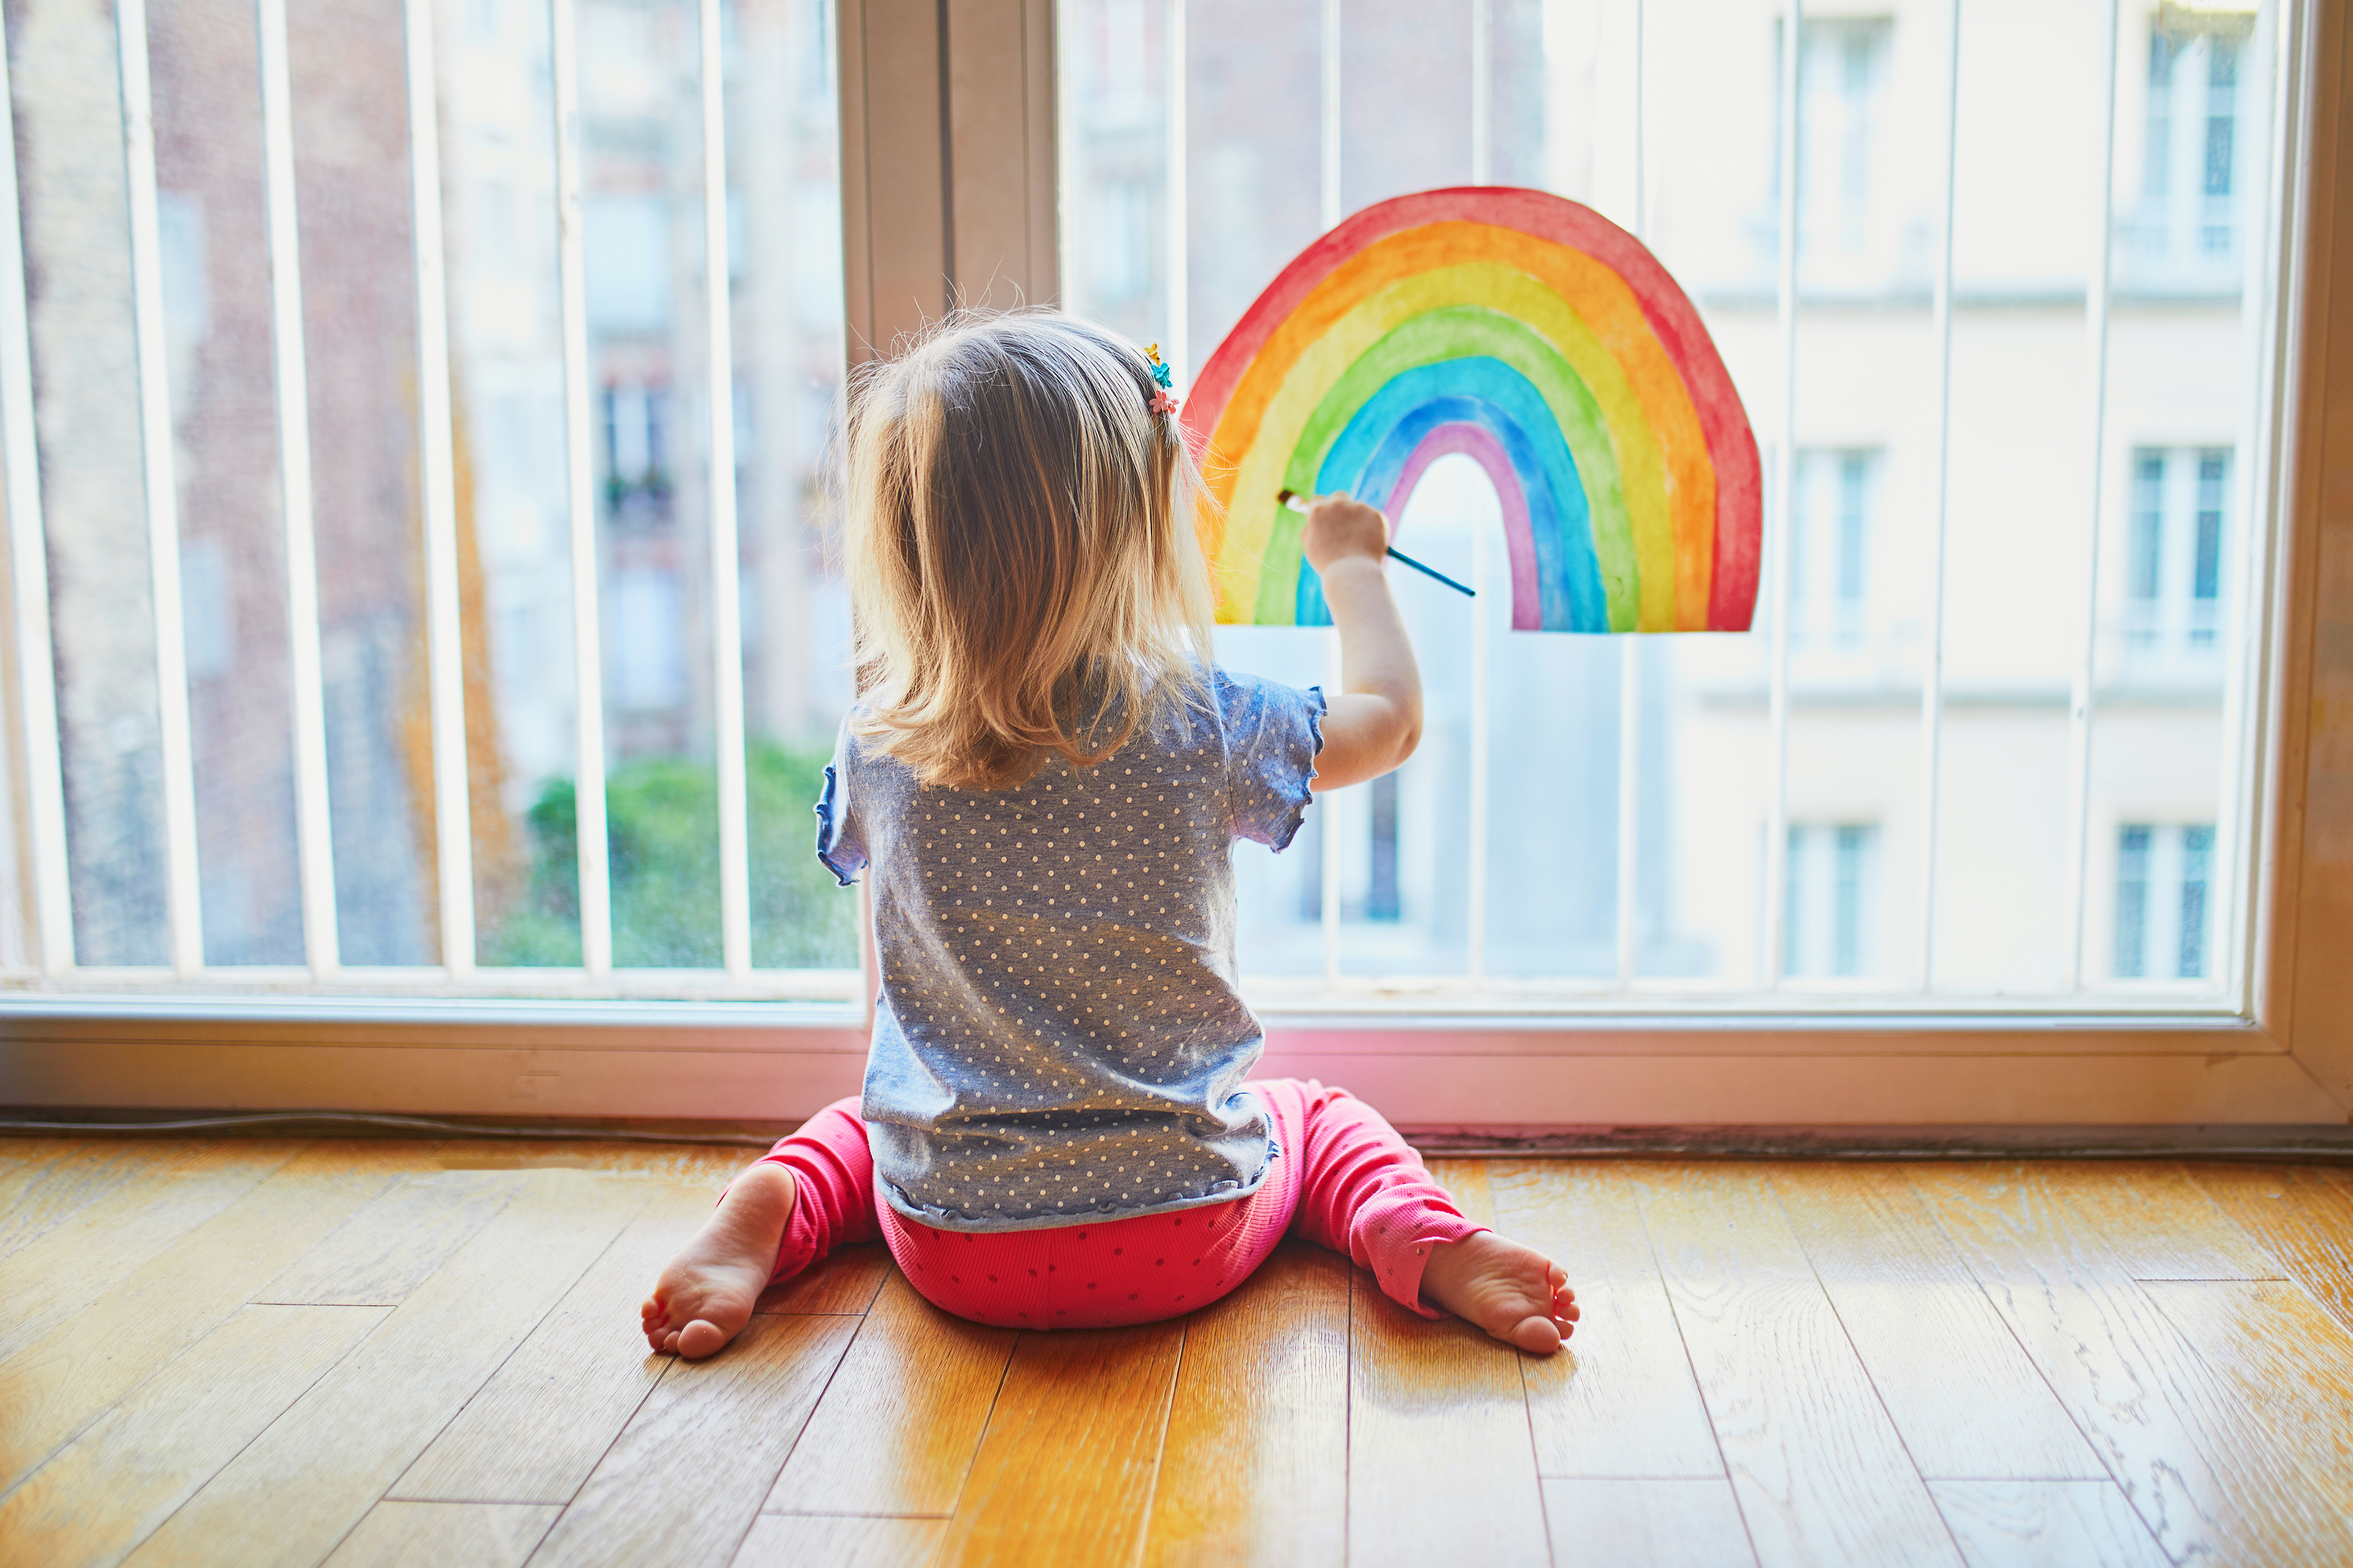 Bambina dipinge un arcobaleno sul vetro della finestra